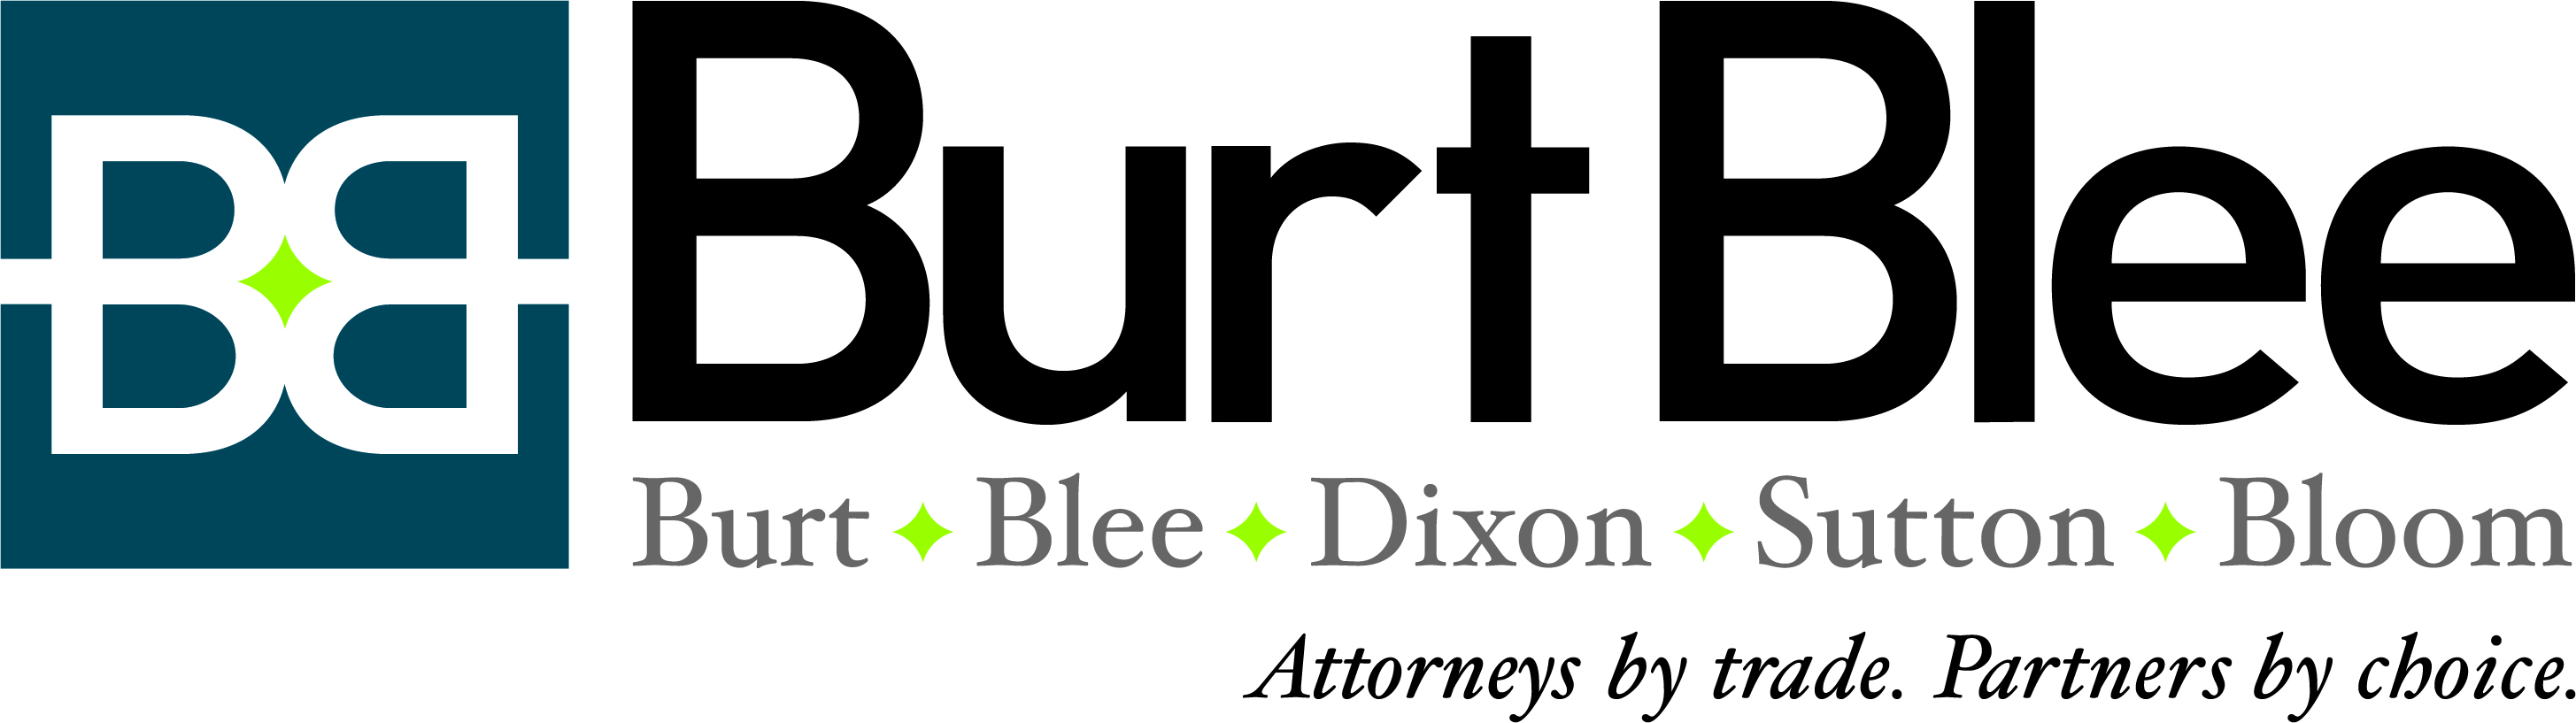 Burt, Blee, Dixon, Sutton & Bloom, LLP Logo